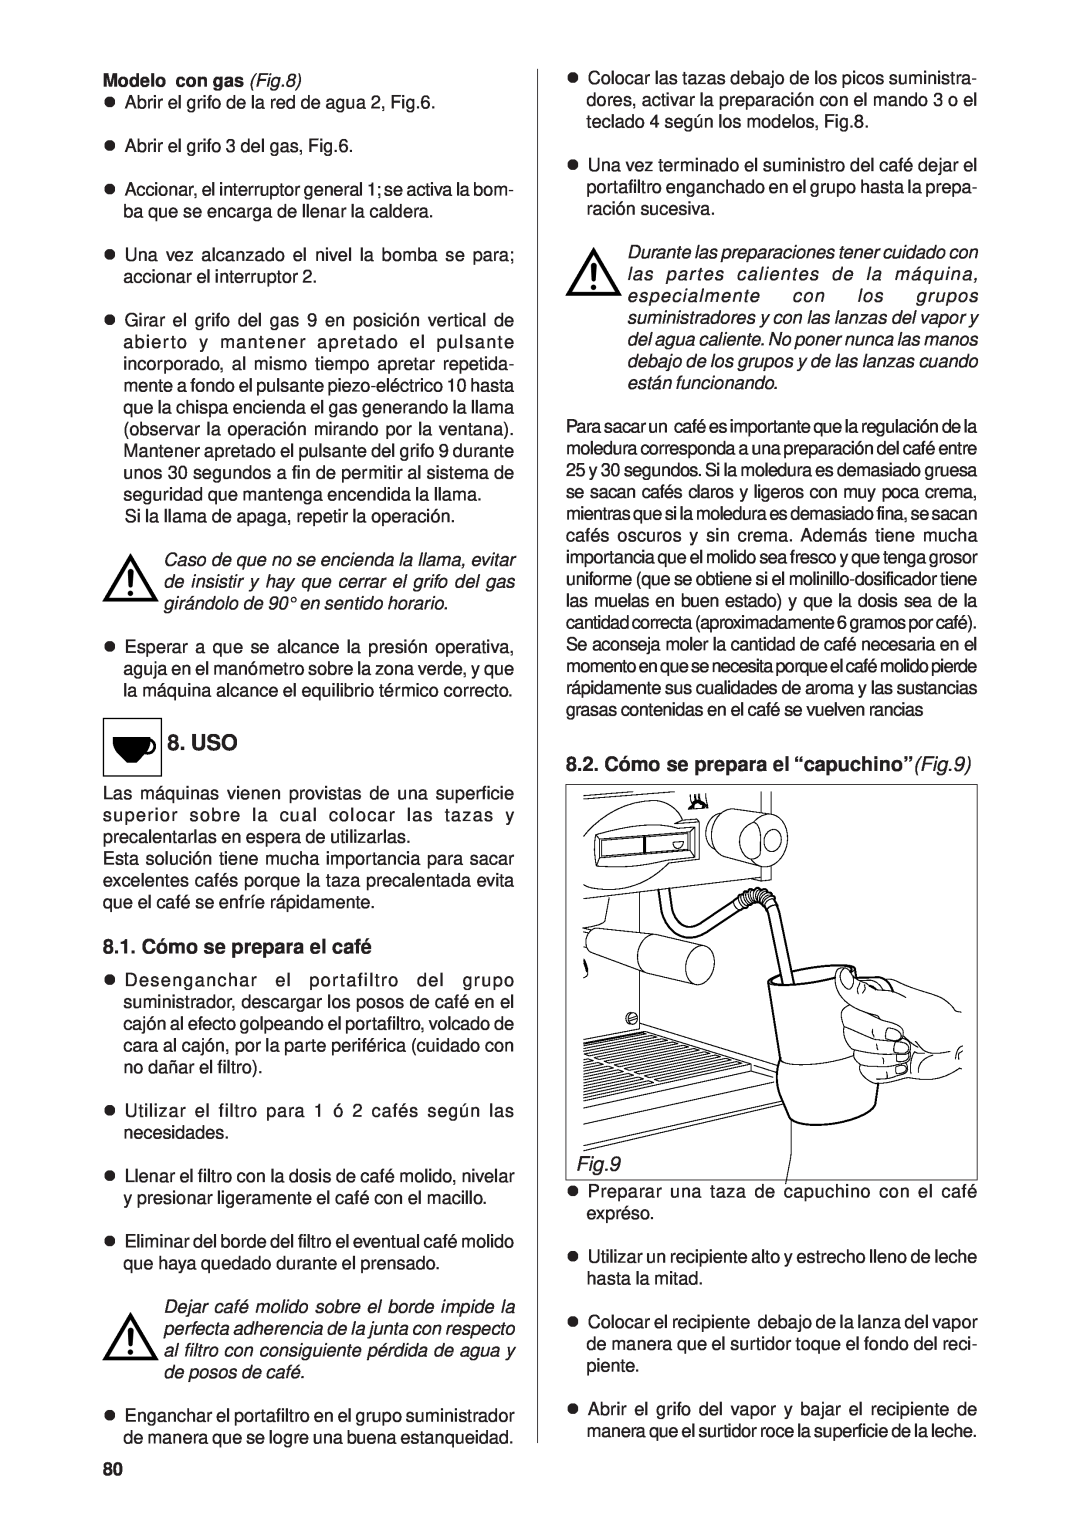 Rancilio Millennium manual 8.1. Cómo se prepara el café, 8.2. Cómo se prepara el “capuchino”, Uso, Modelo con gas 